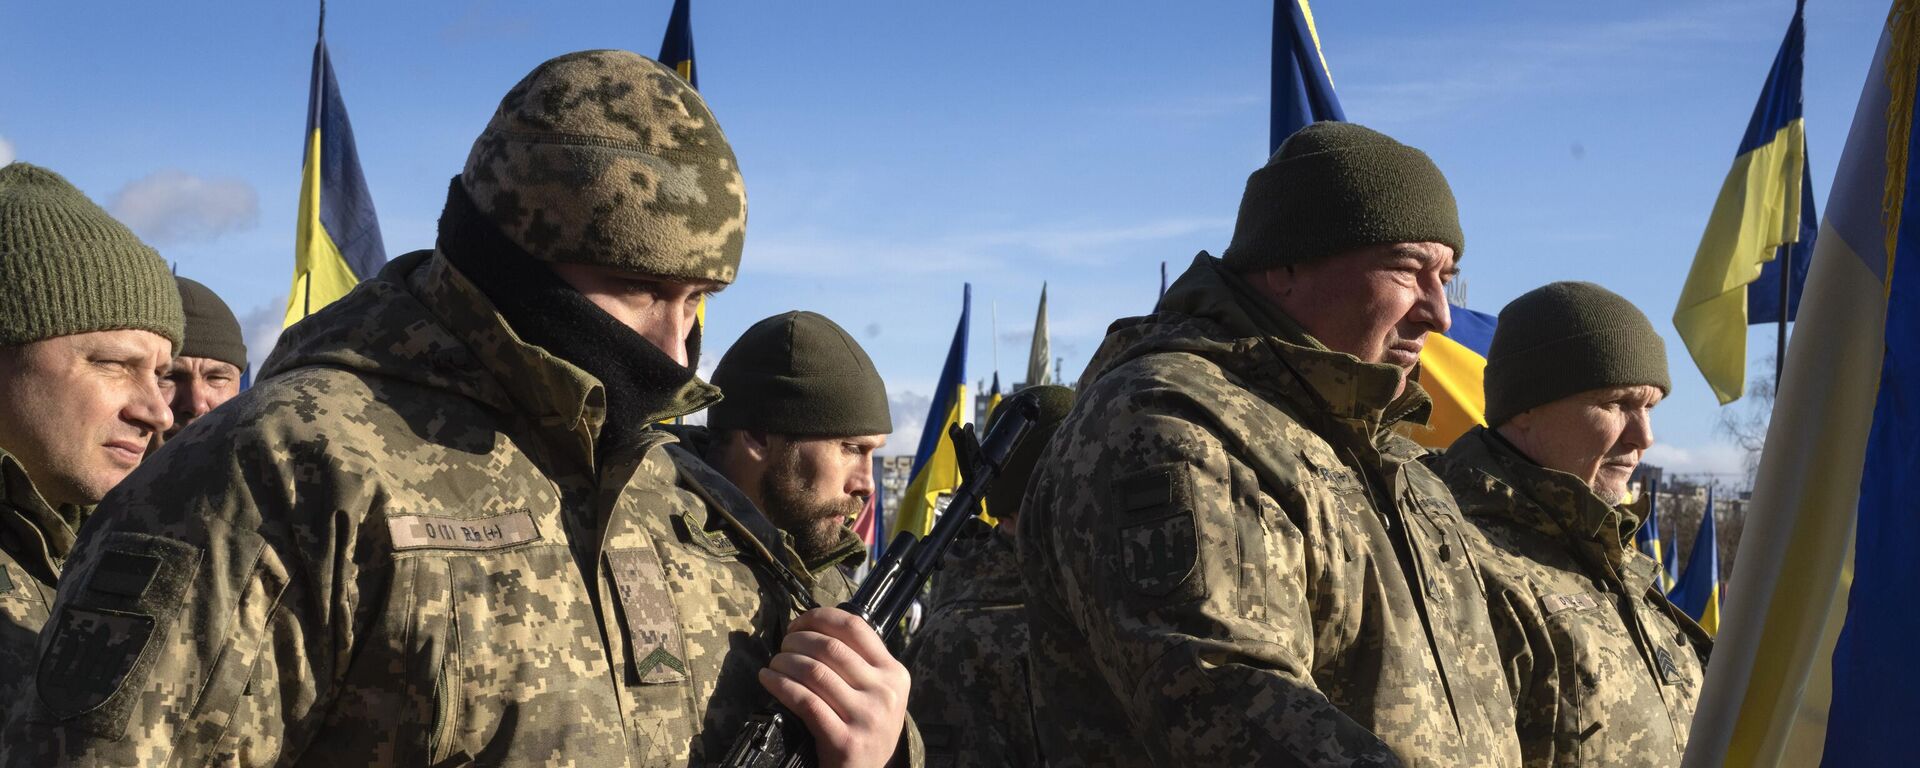 Soldados ucranianos rinden sus últimos respetos a su camarada en un cementerio de Kiev, Ucrania, el 21 de febrero de 2022 - Sputnik Mundo, 1920, 21.12.2023